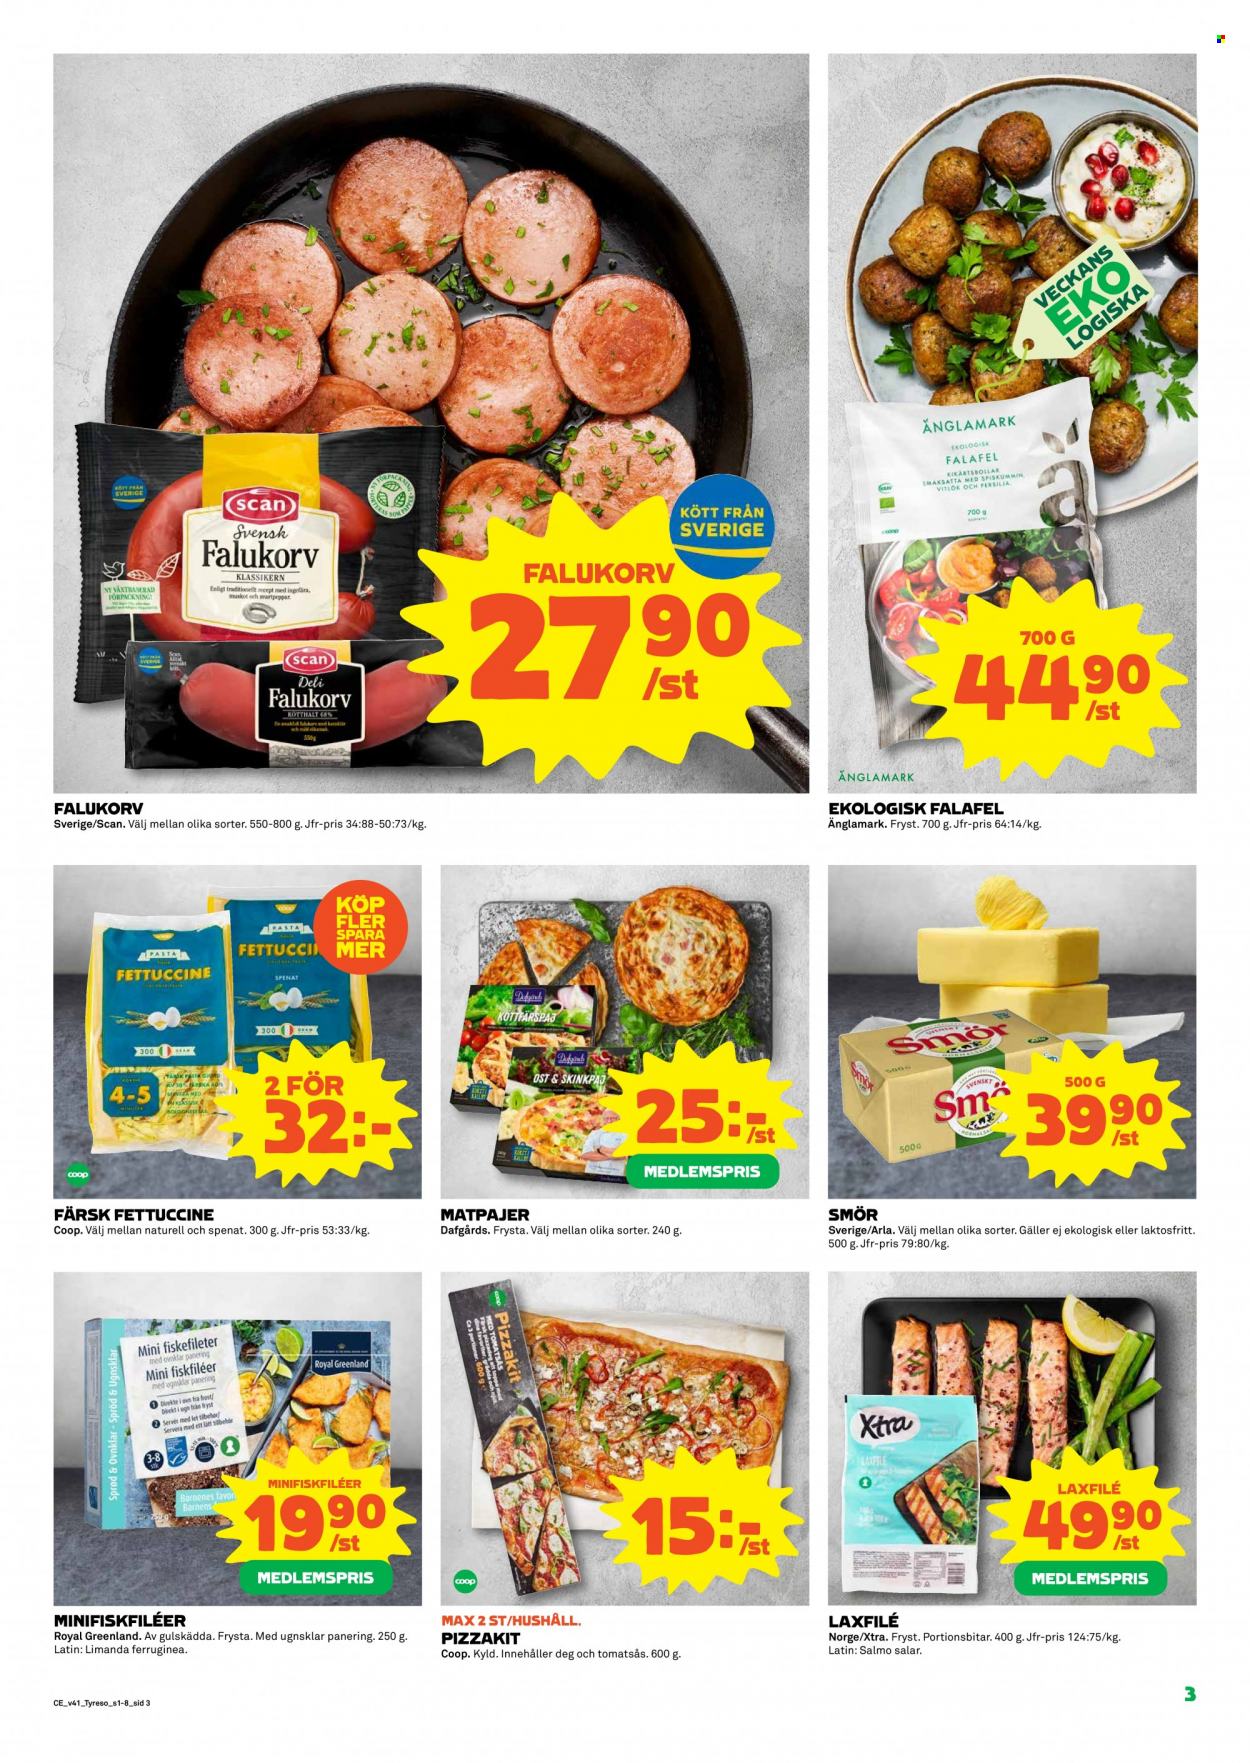 thumbnail - Coop reklamblad - 11/10 2021 - 17/10 2021 - varor från reklamblad - spenat, lax, ost, Arla, smör, tomatsås. Sida 3.